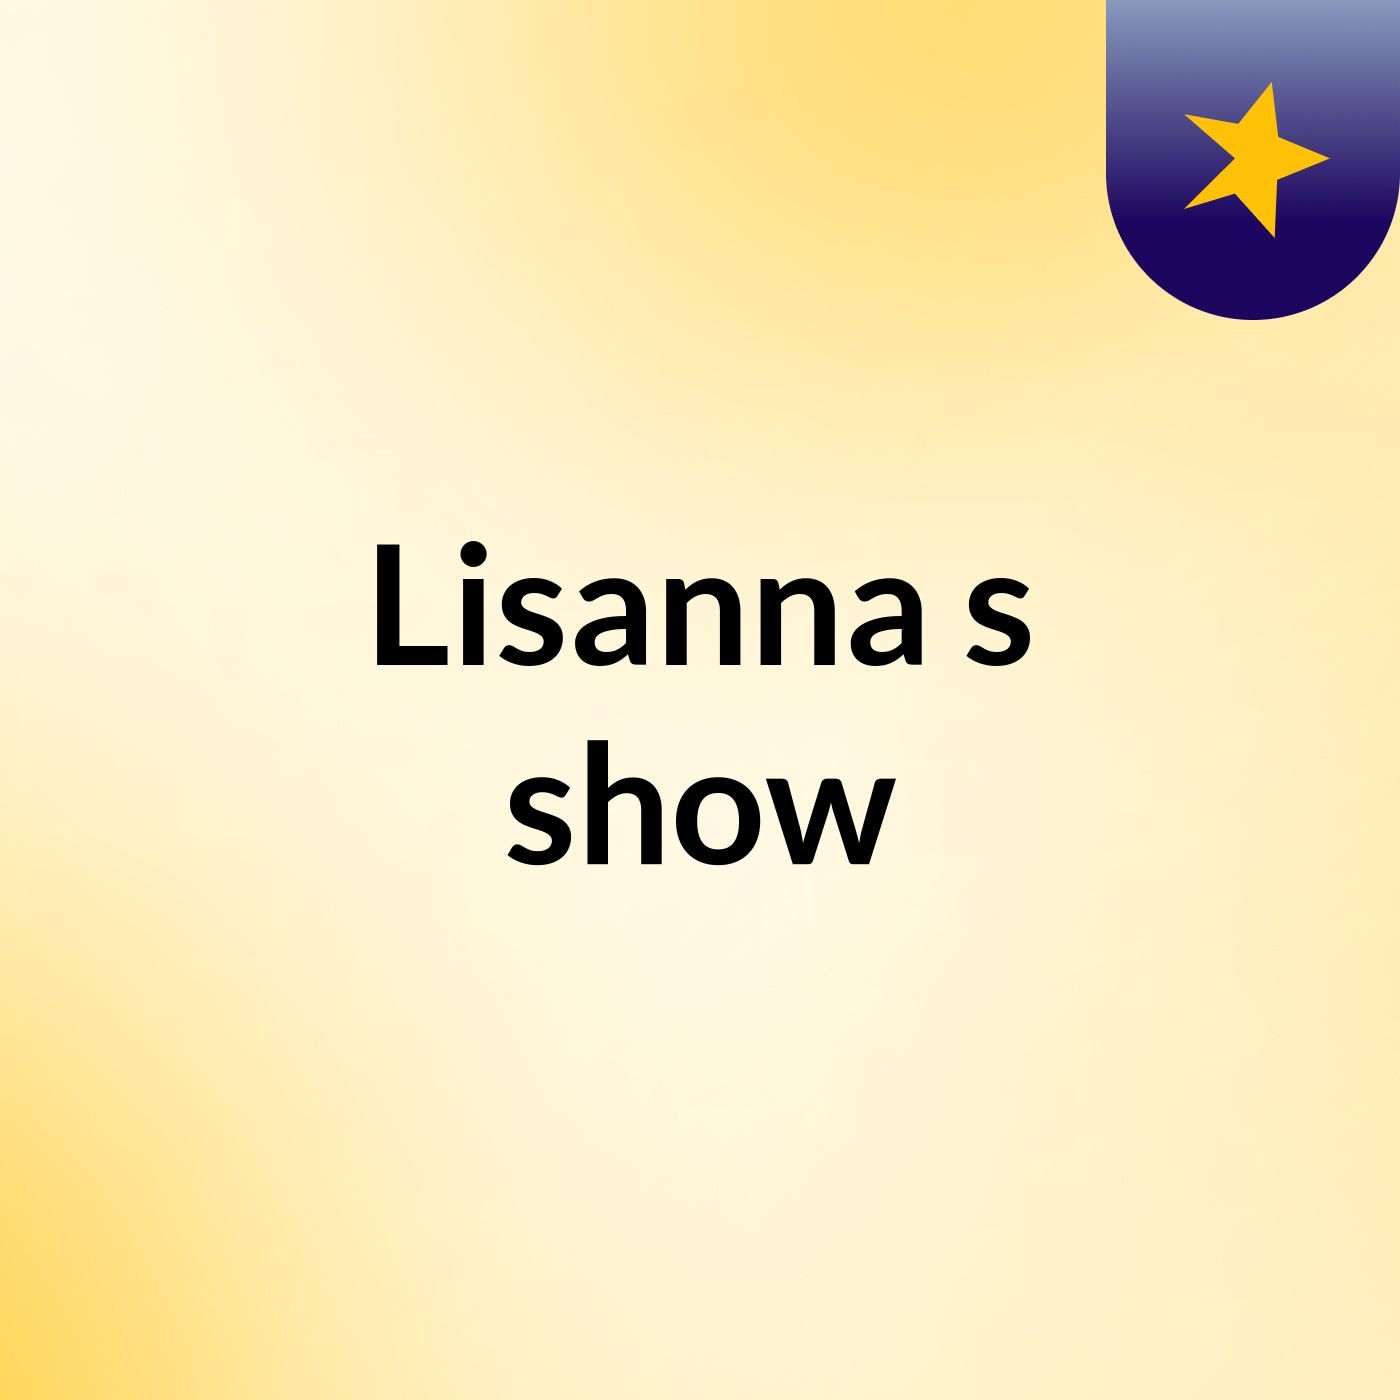 Lisanna's show